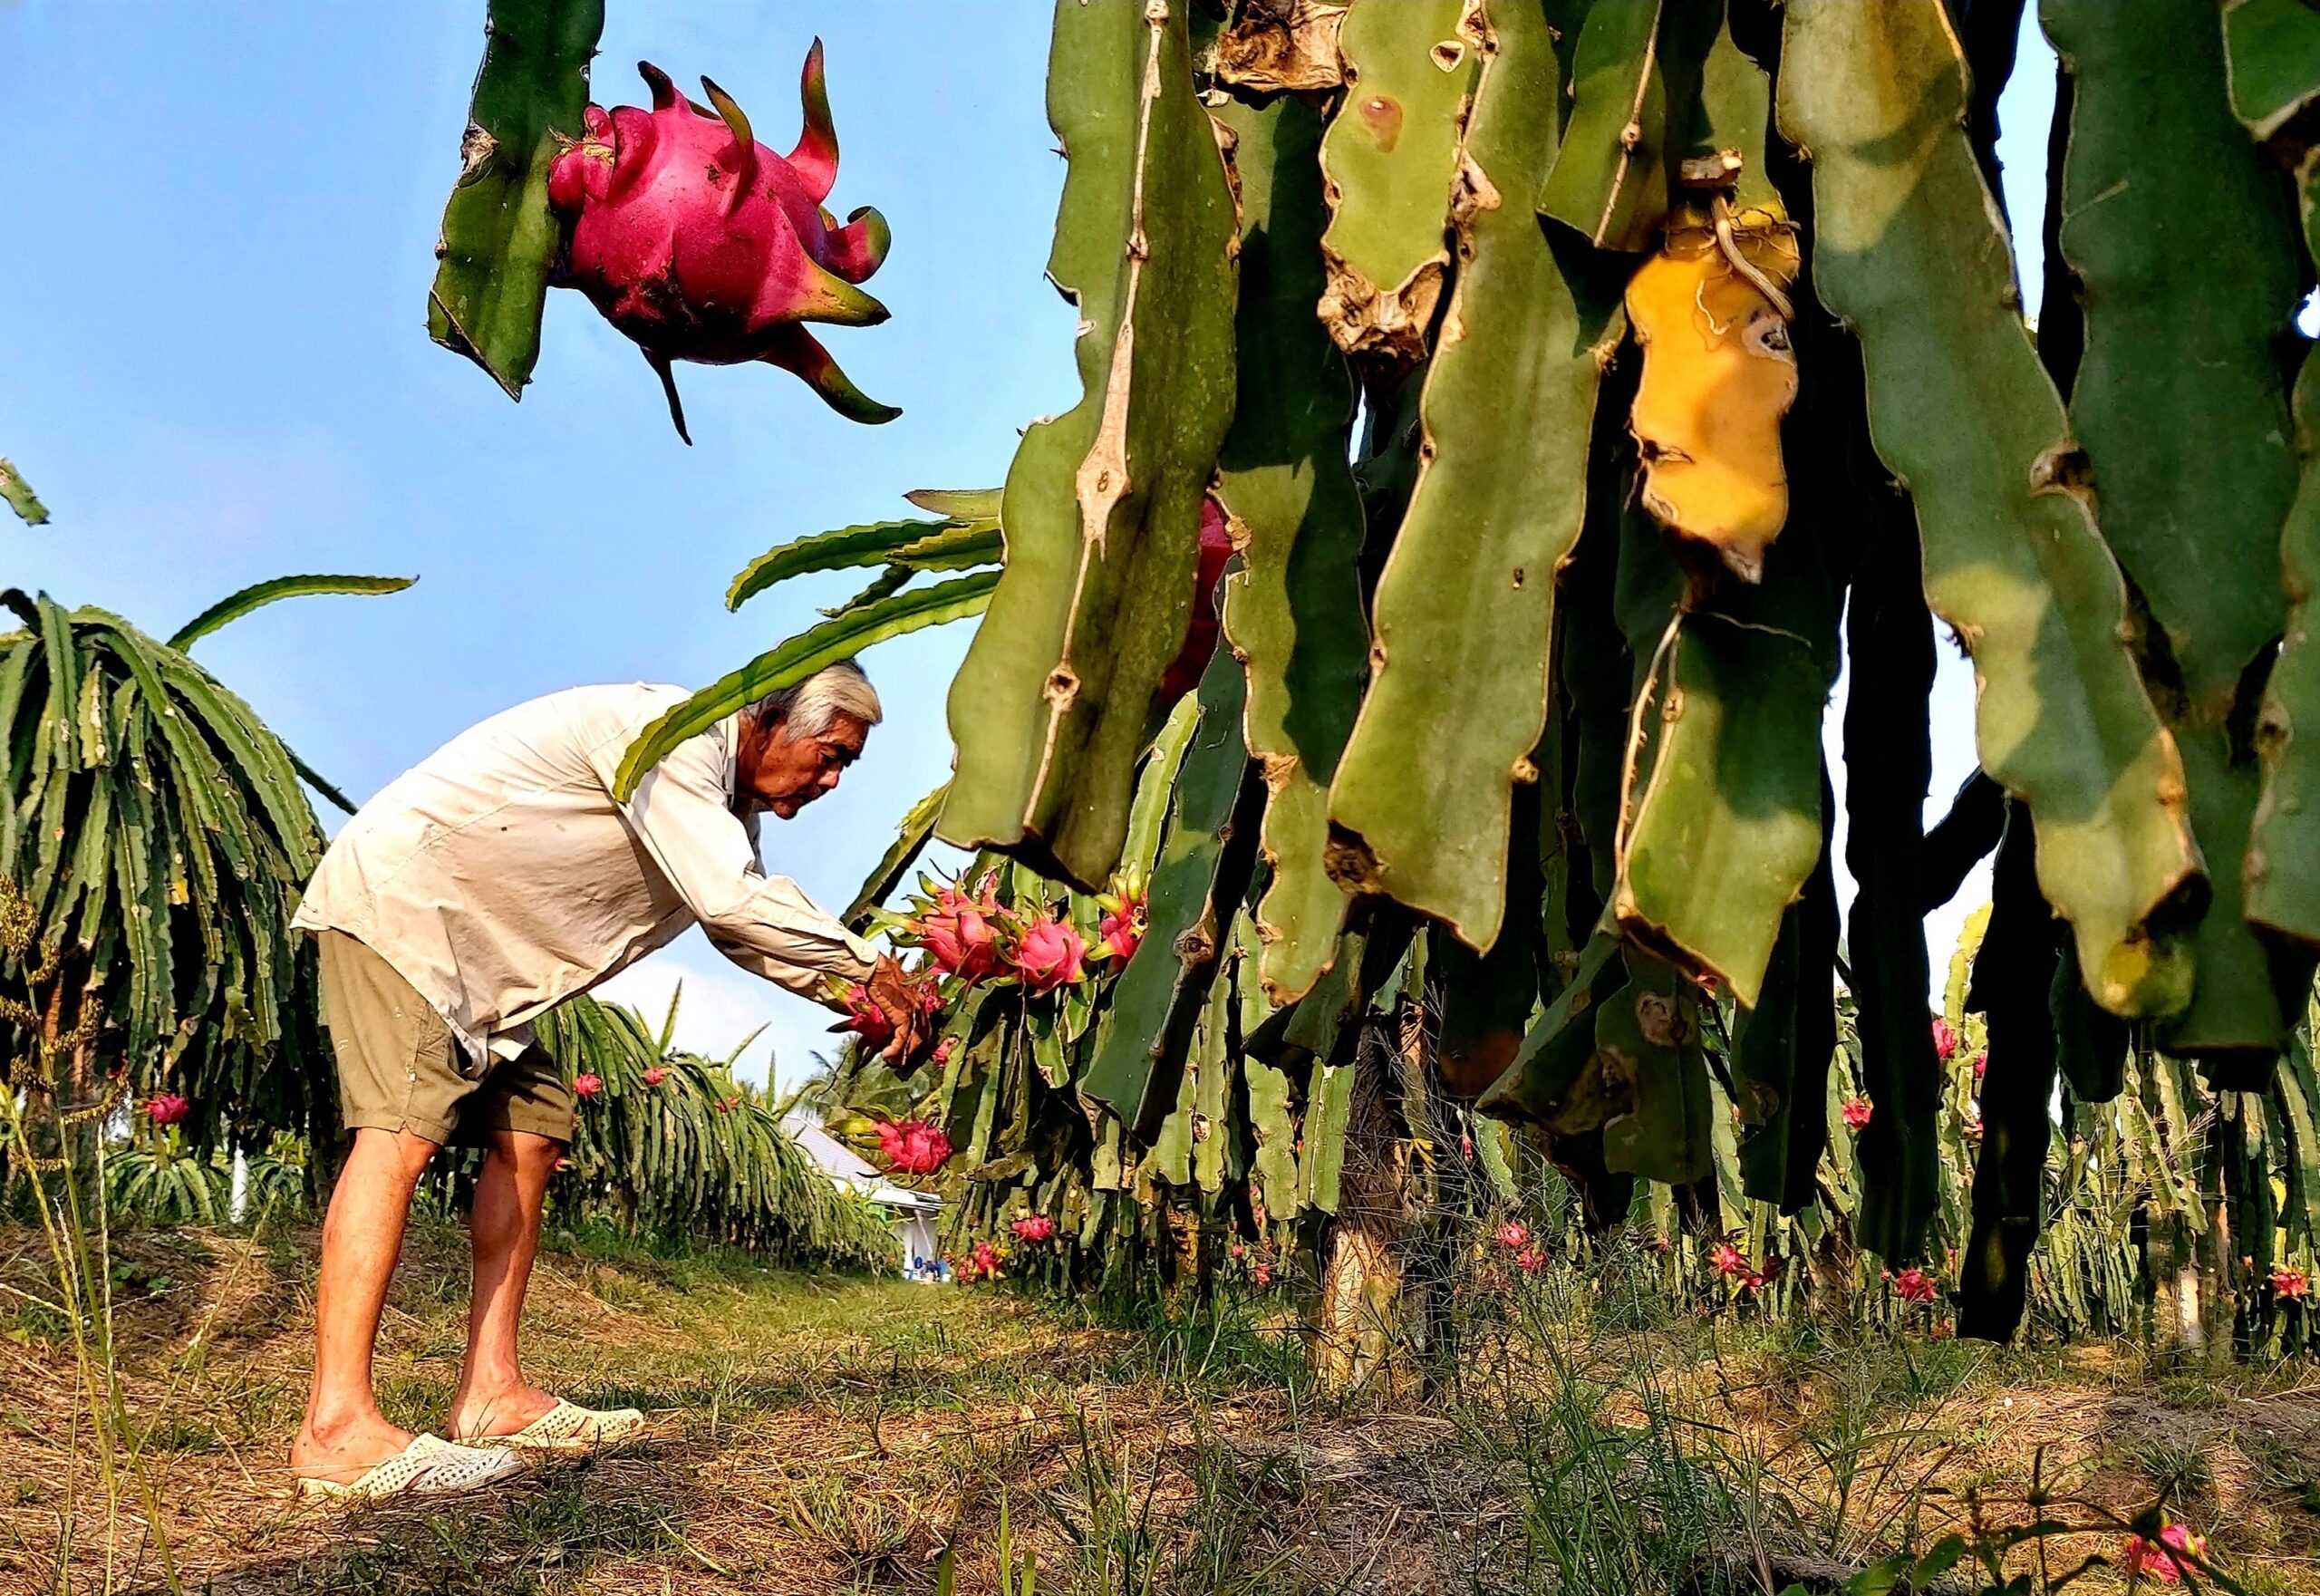 เวียดนามคาดส่งออก 'ผักผลไม้' สูงเป็นประวัติการณ์ในปี 2023